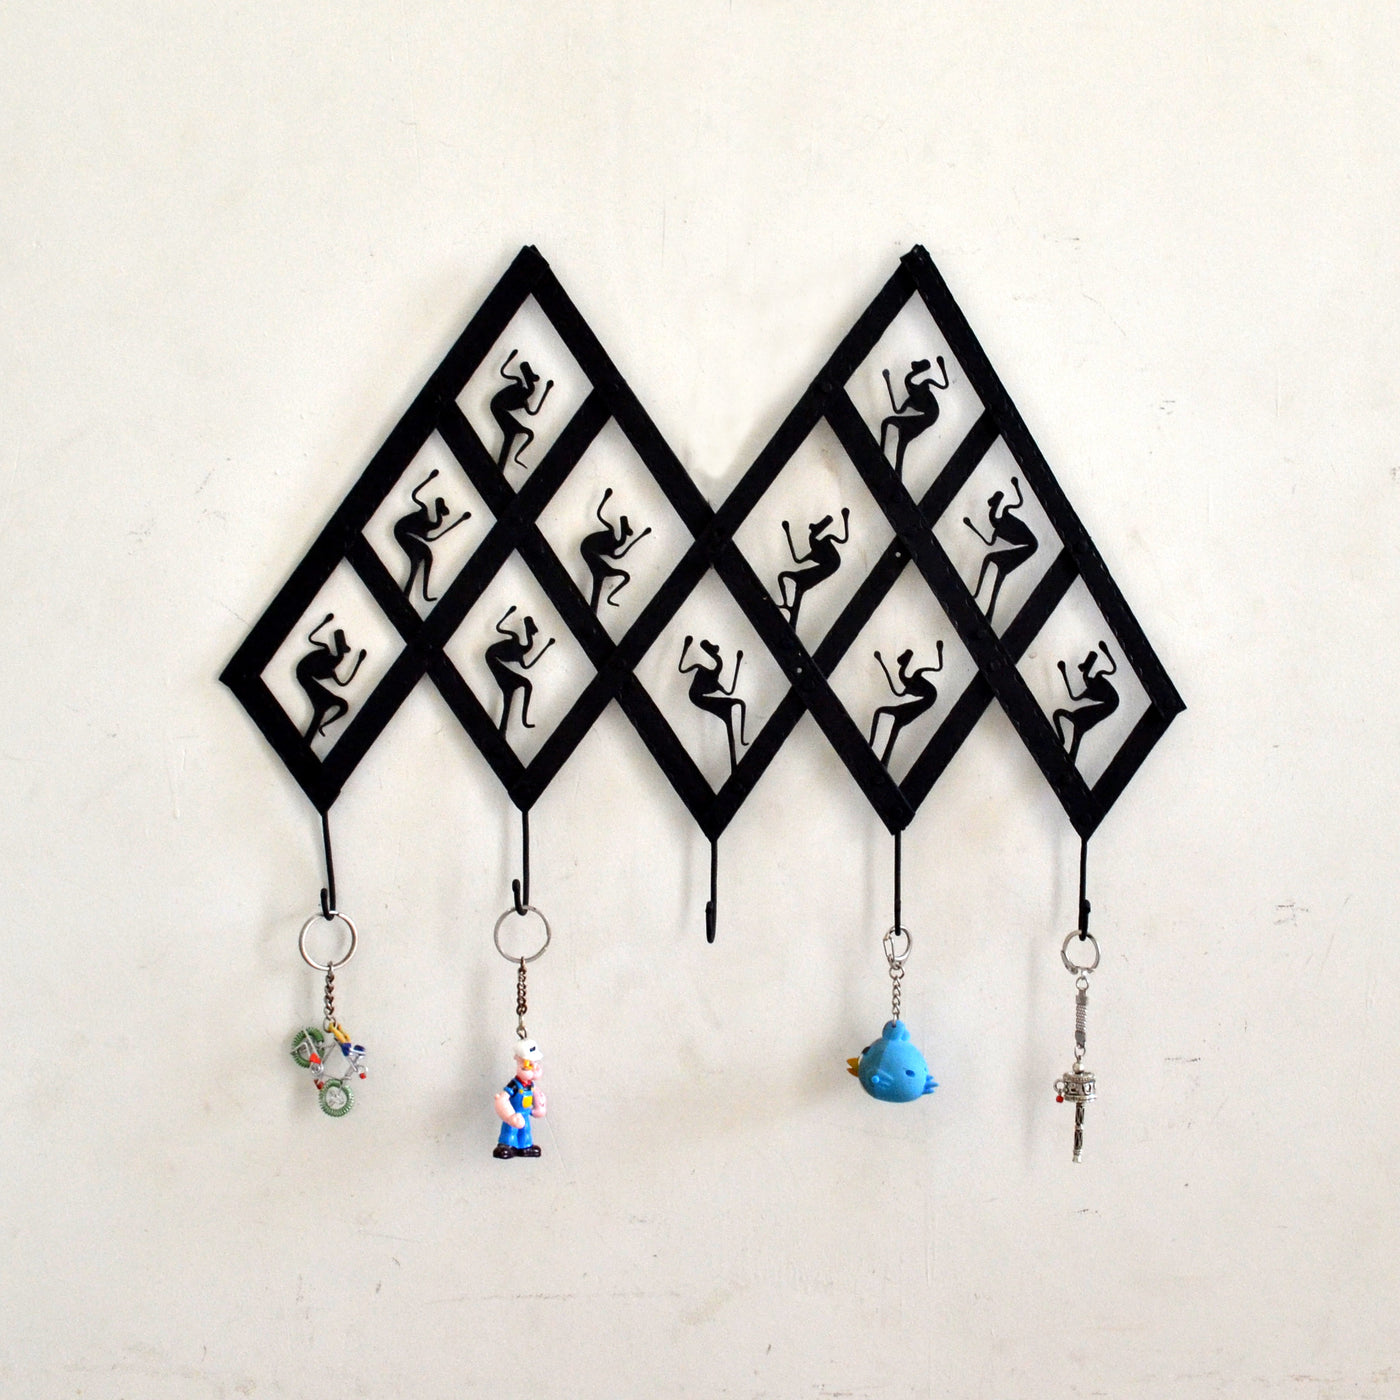 Chinhhari arts Wrought Iron  Abstract Tribal 5 Hook Keychain Holder - Chinhhari Arts store